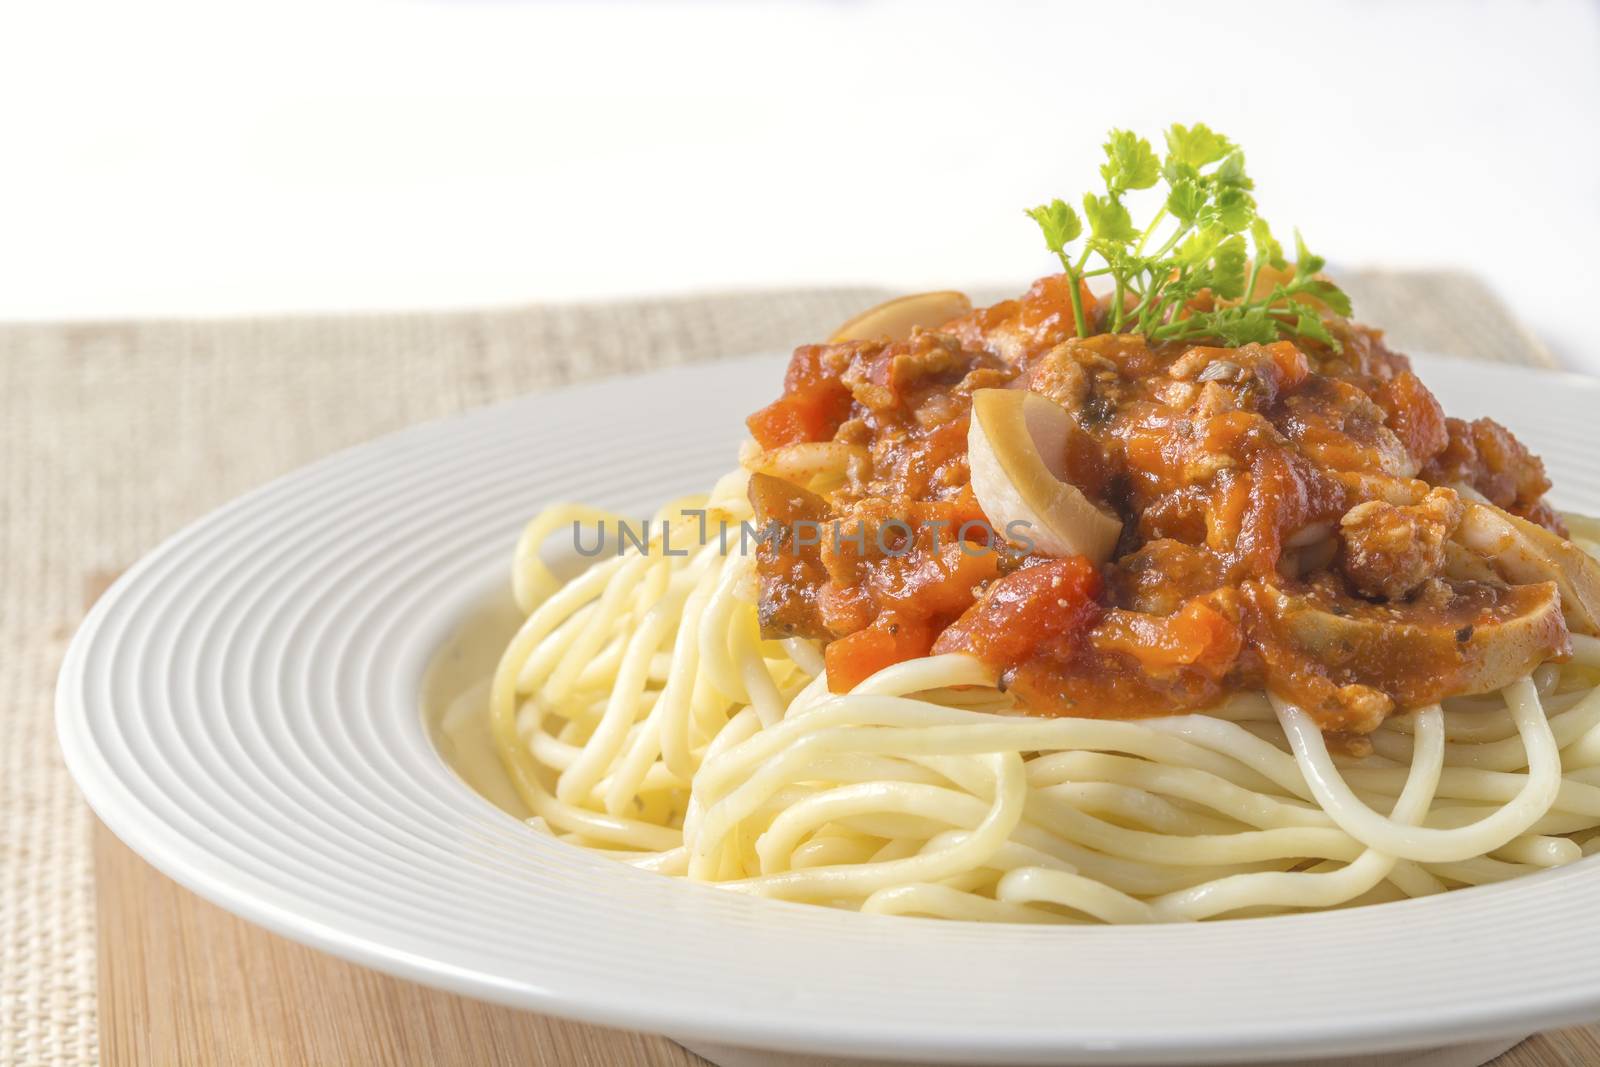 Spaghetti pasta with tomato beef sauce on dish